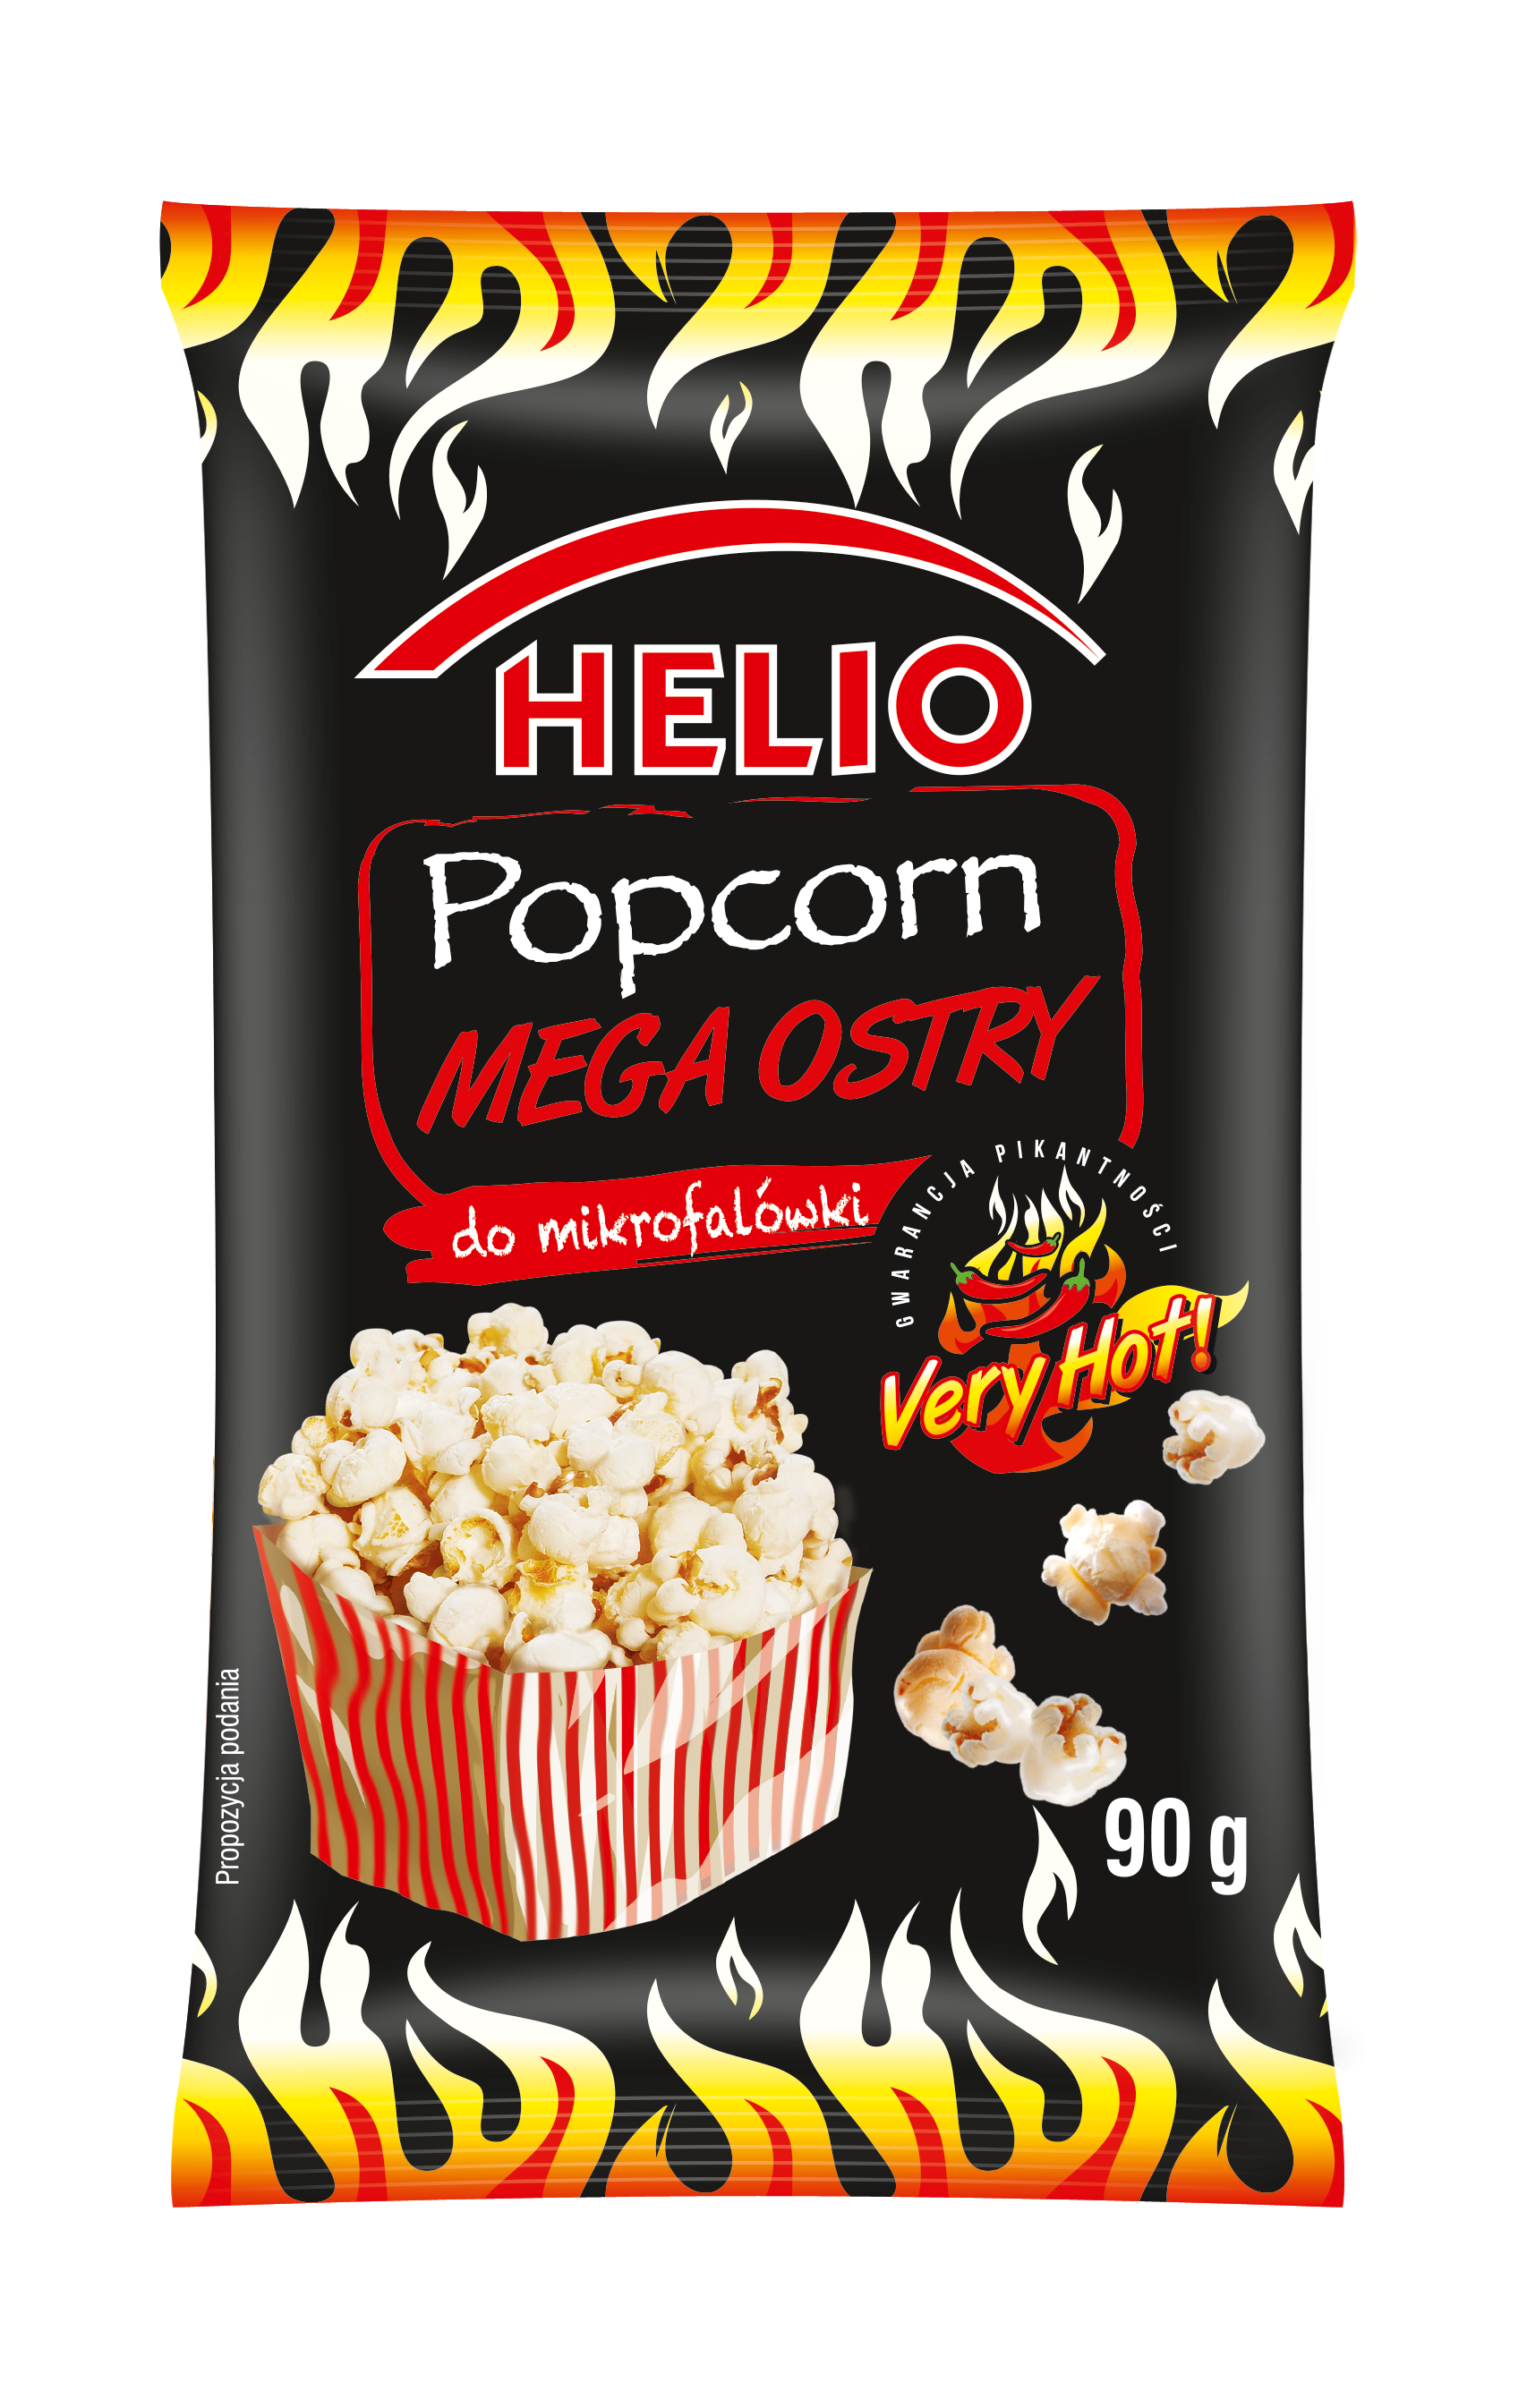 Nowe popcorny HELIO